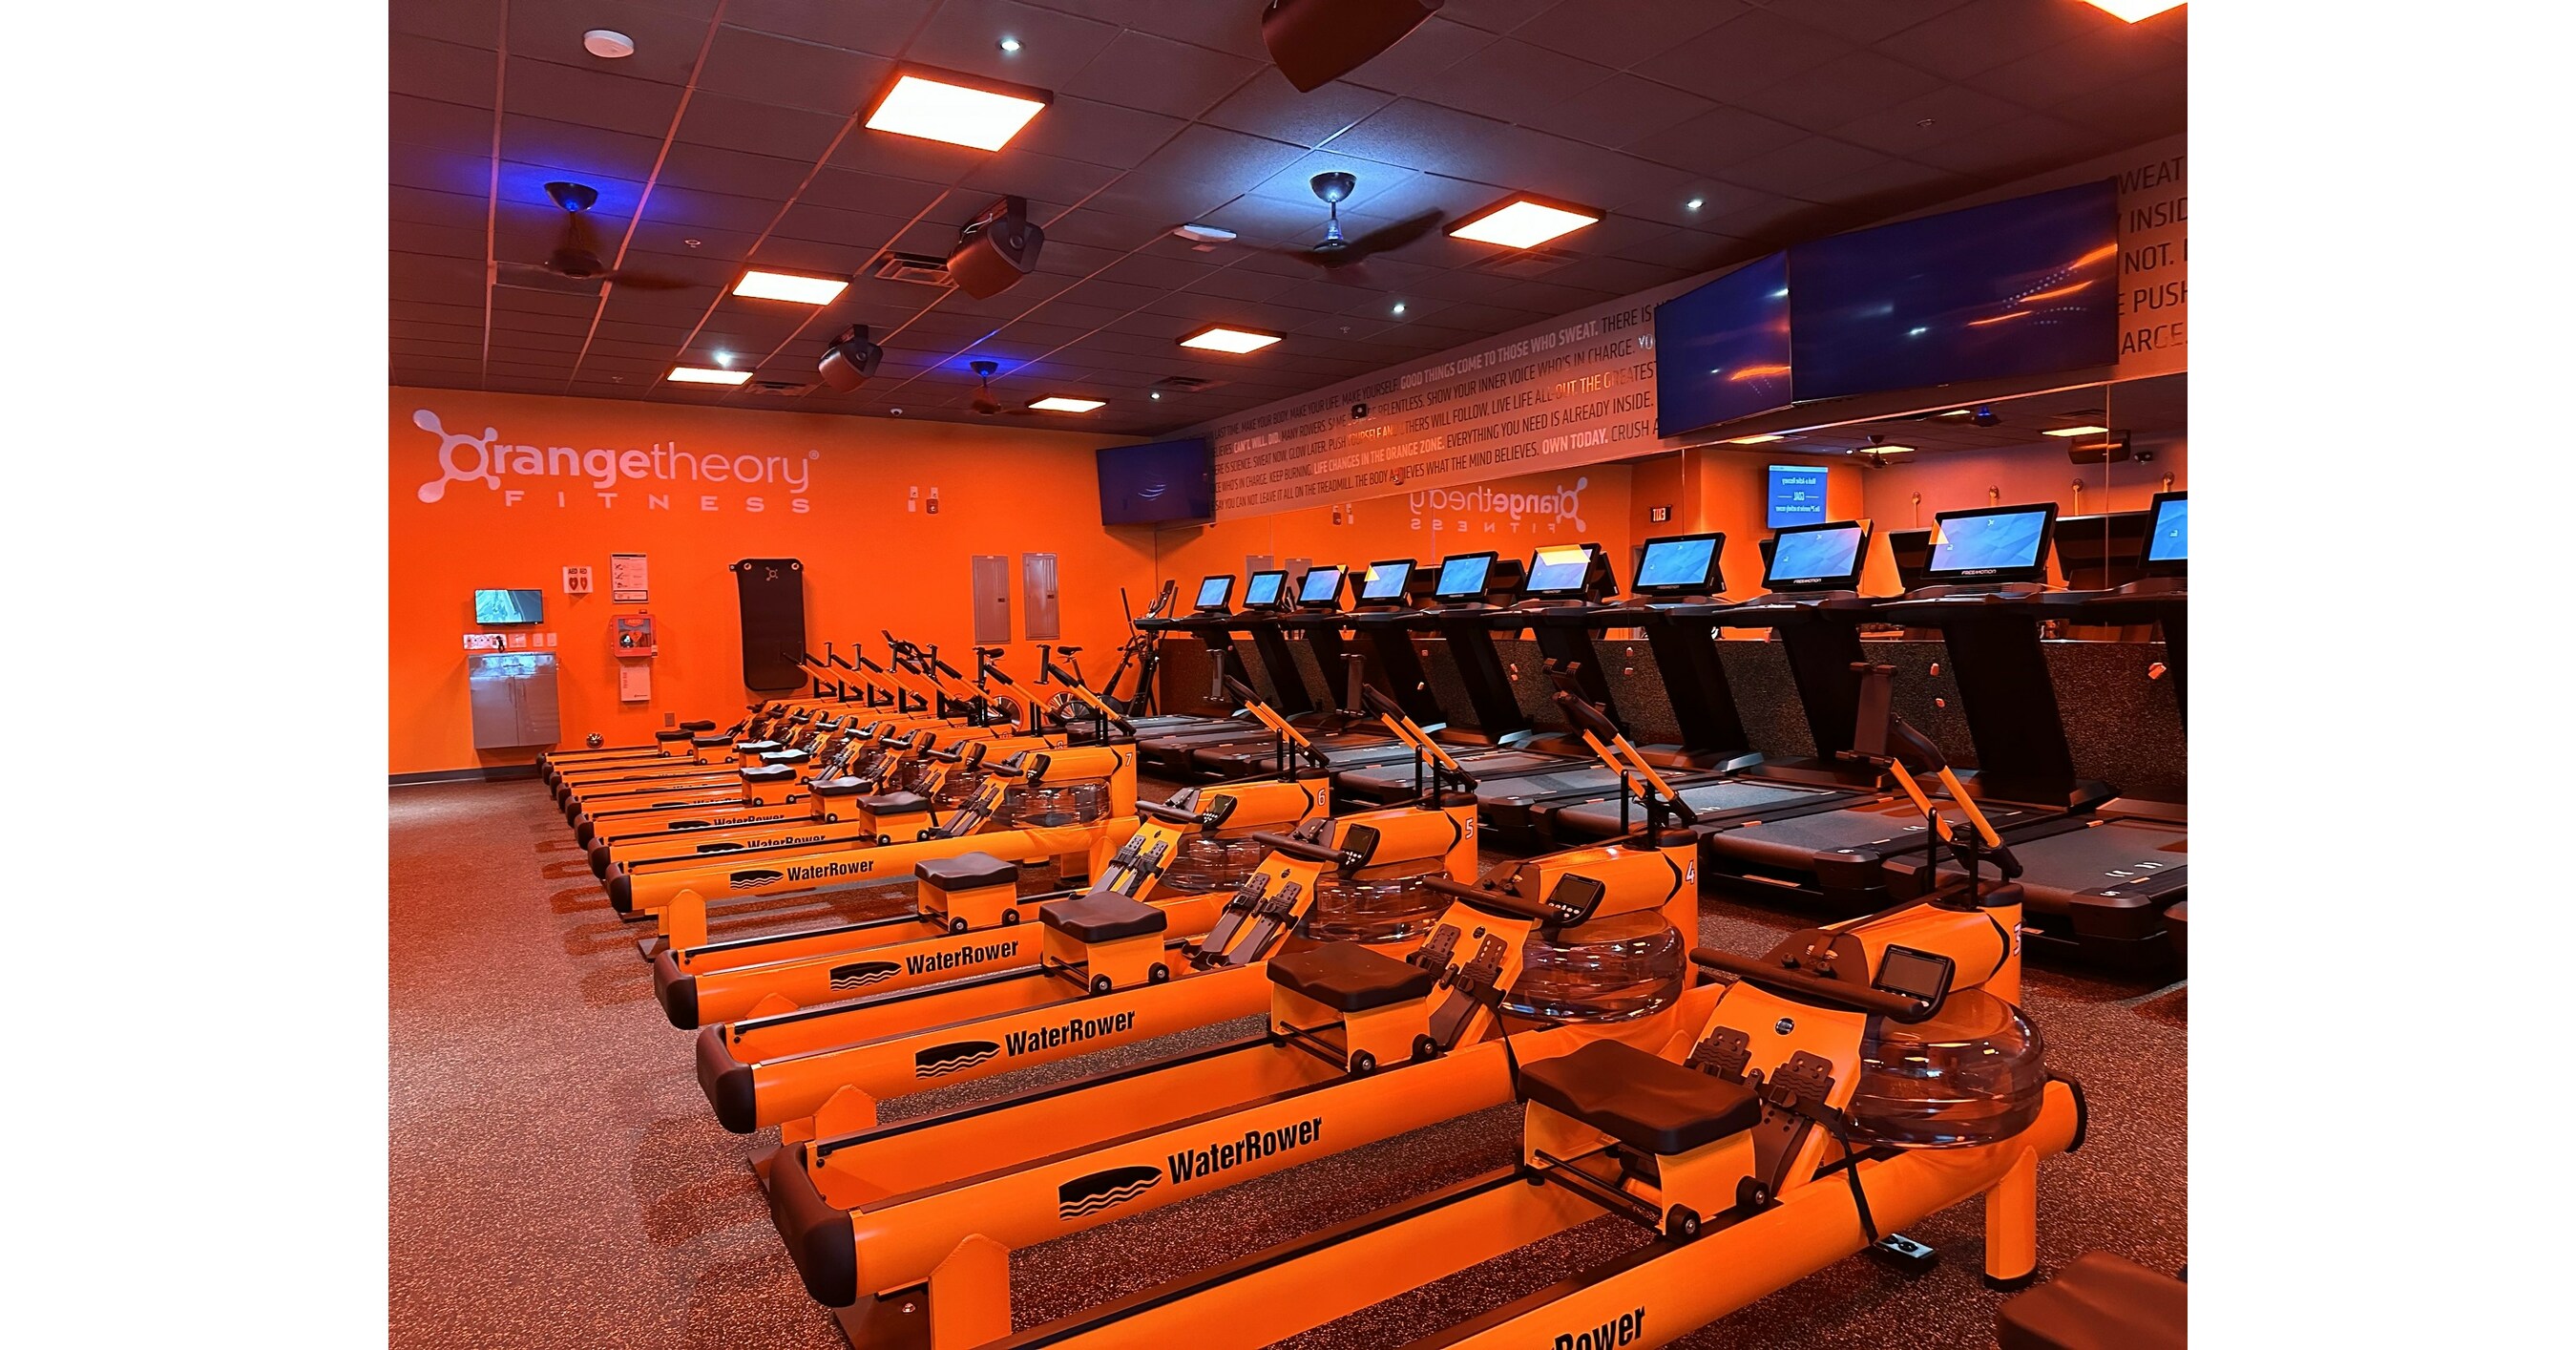 Franchise group launches its 14th Orangetheory Fitness studio in NJ - NJBIZ